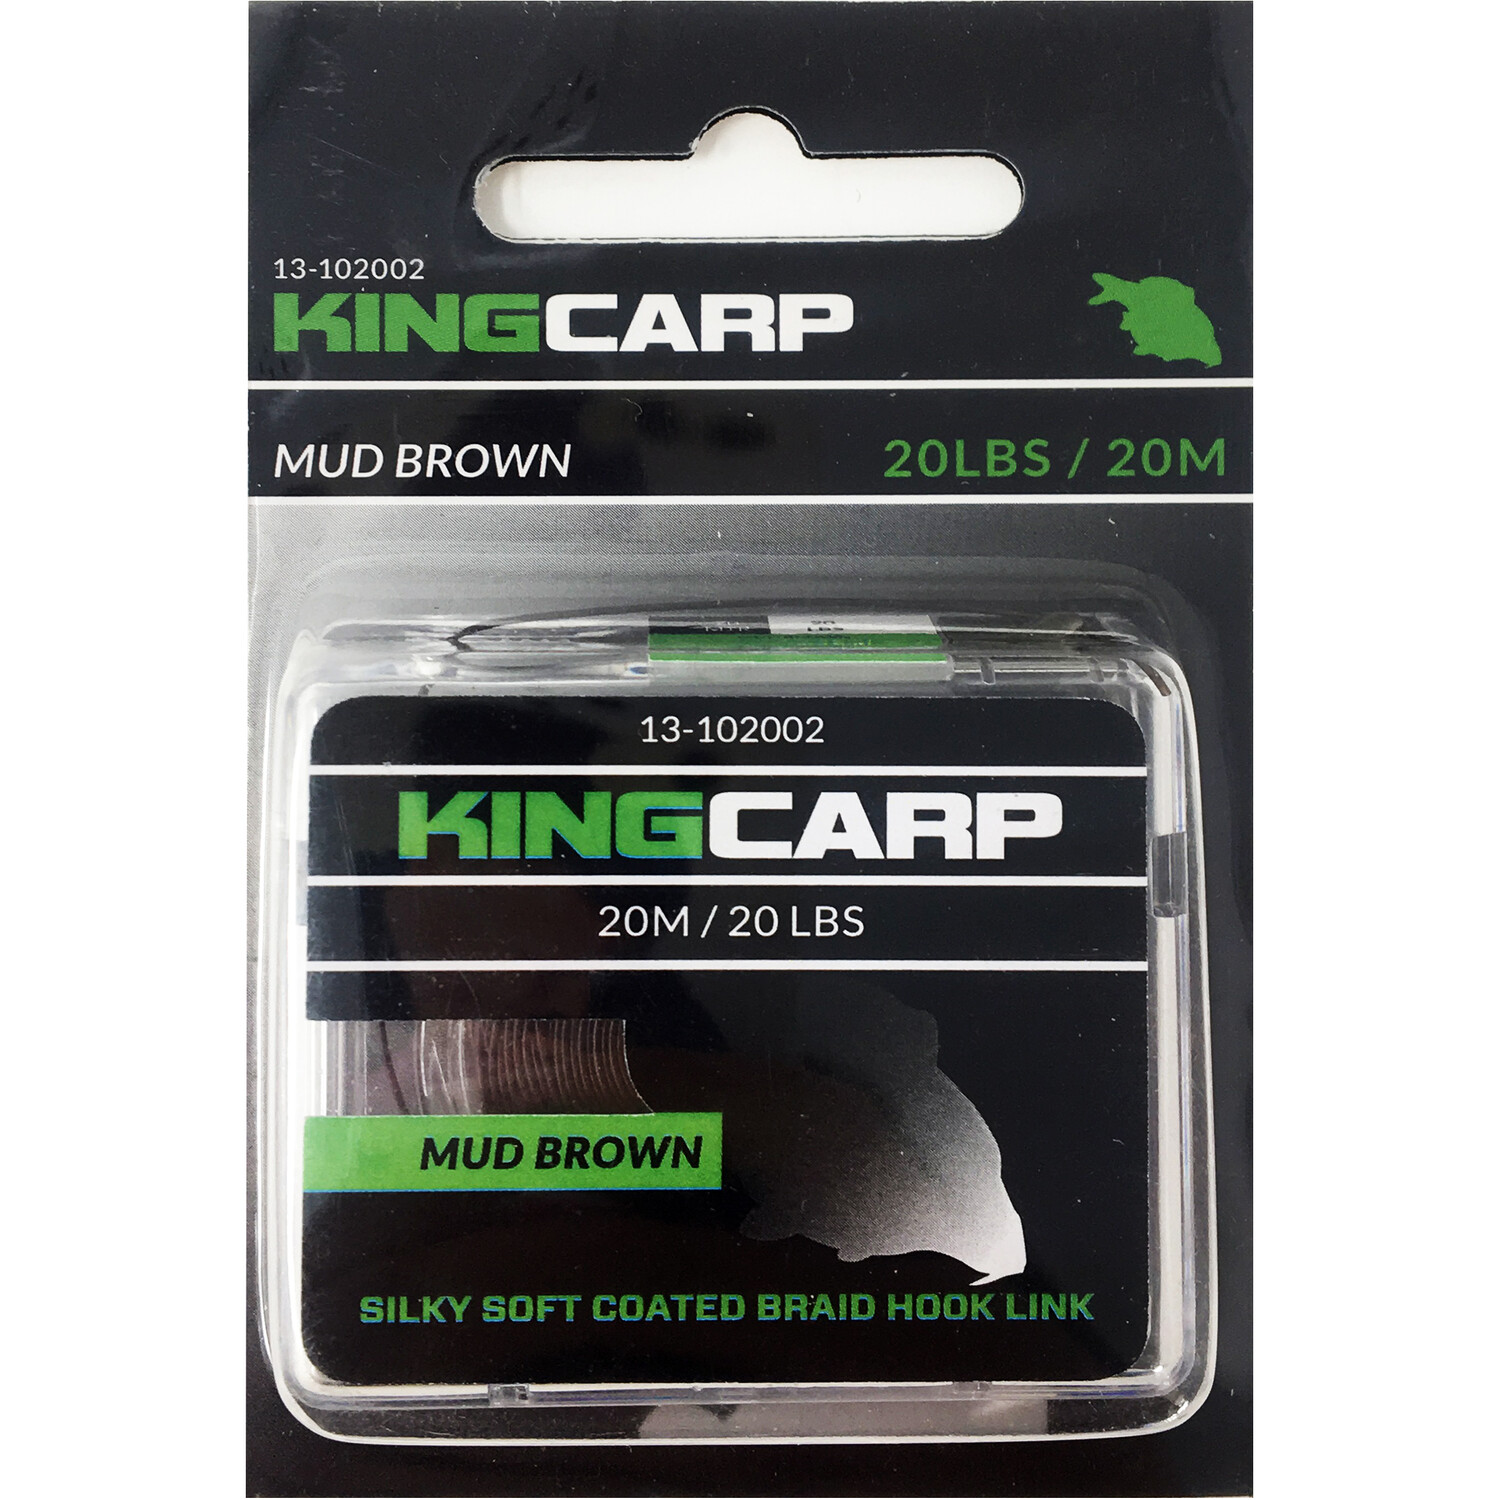 Mud Brown King Carp Coated Braid Hook Link Image 2